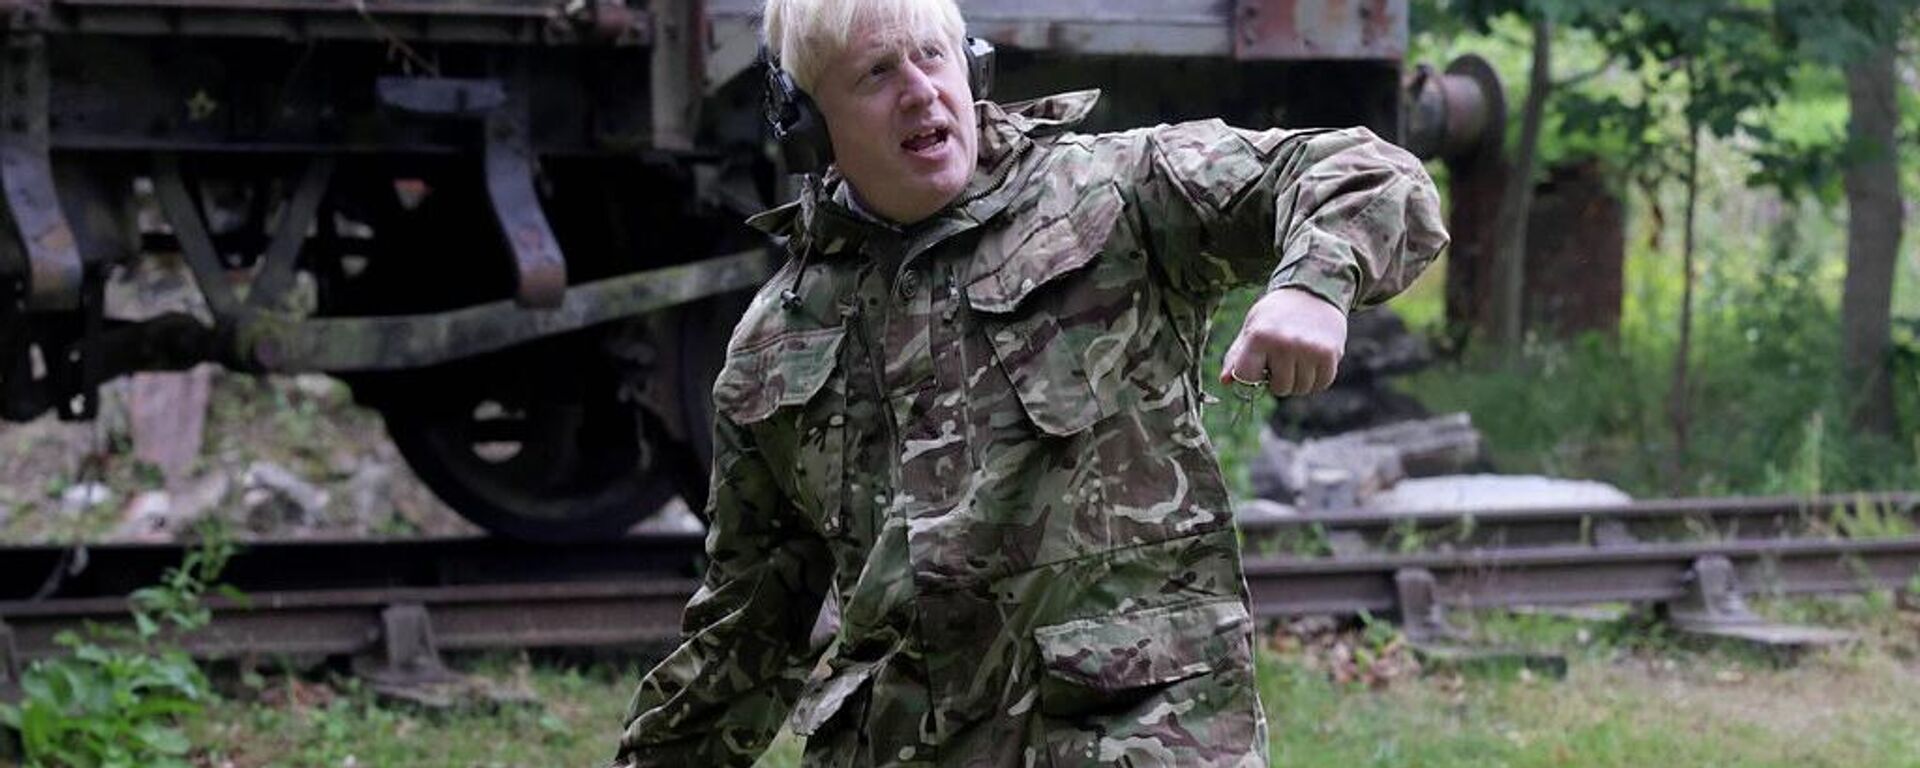 Britanya Başbakanı Boris Johnson, Kuzey Yorkshire'daki askeri üste Ukraynalı askerlerle el ele kol kola eğitimlerine katılırken bir noktada el bombası da attı.  - Sputnik Türkiye, 1920, 24.07.2022